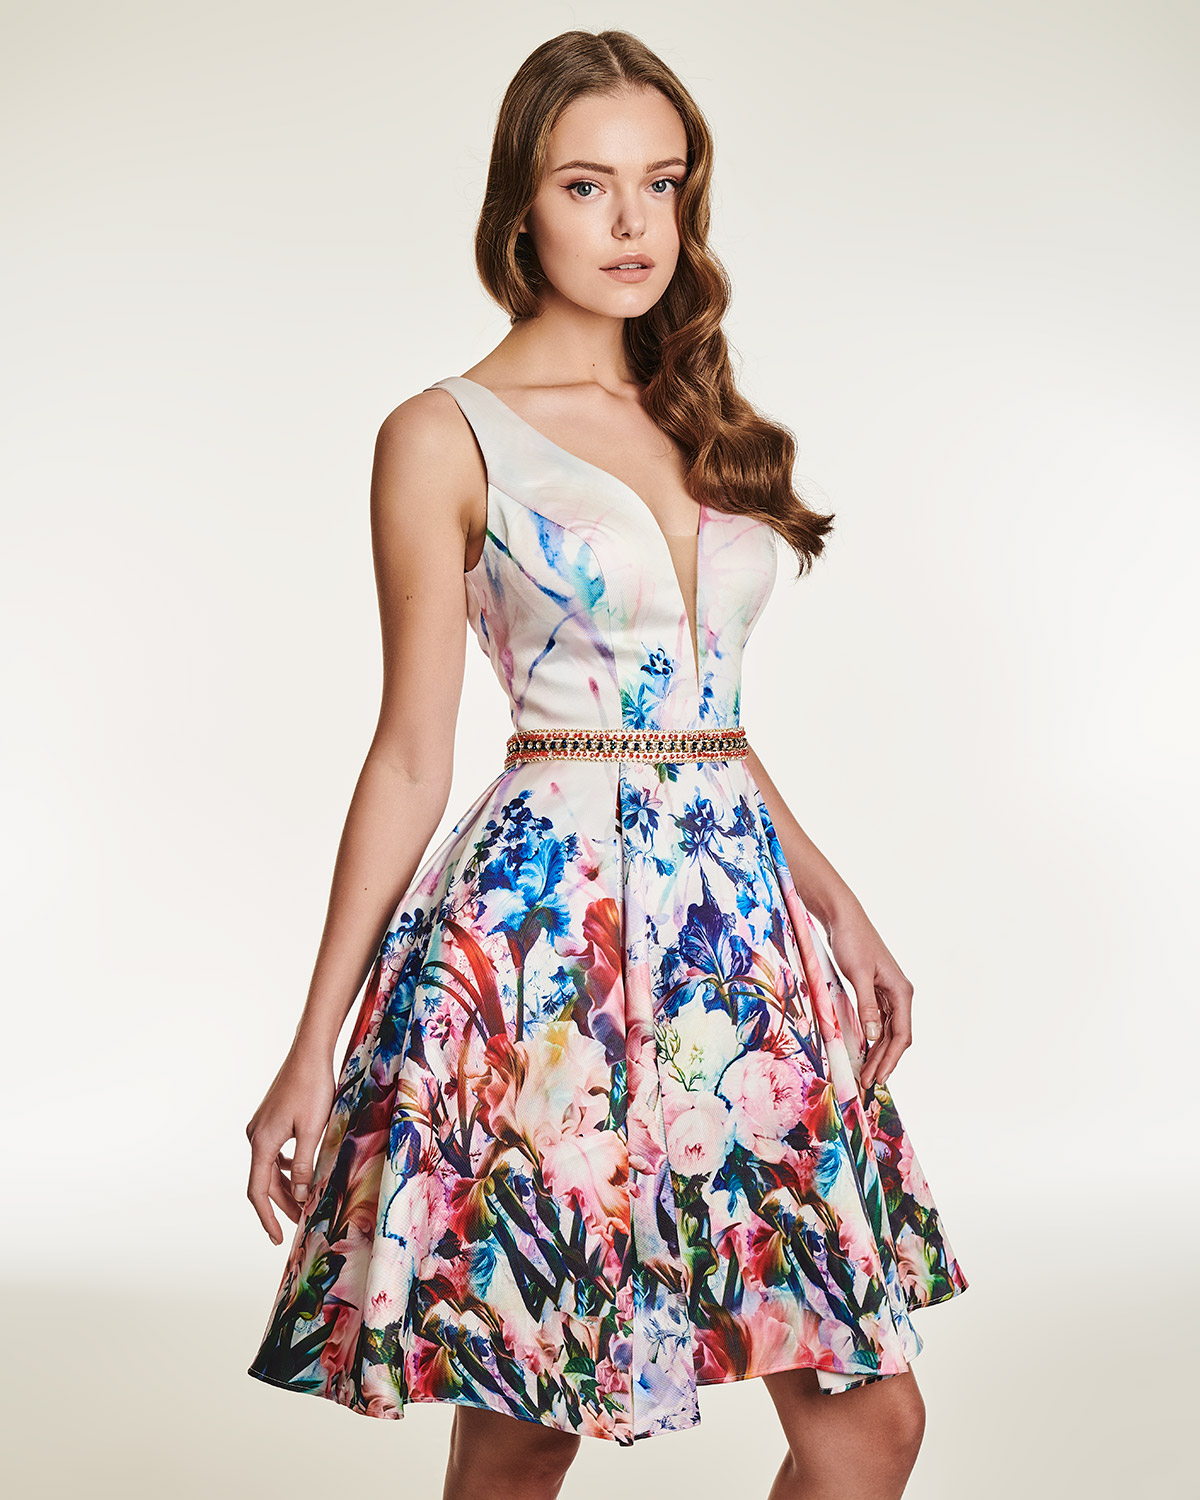 Κοκτέιλ Φορέματα / Κοκτέιλ φόρεμα με φλοράλ μοτίβο και κέντημα στη μέση